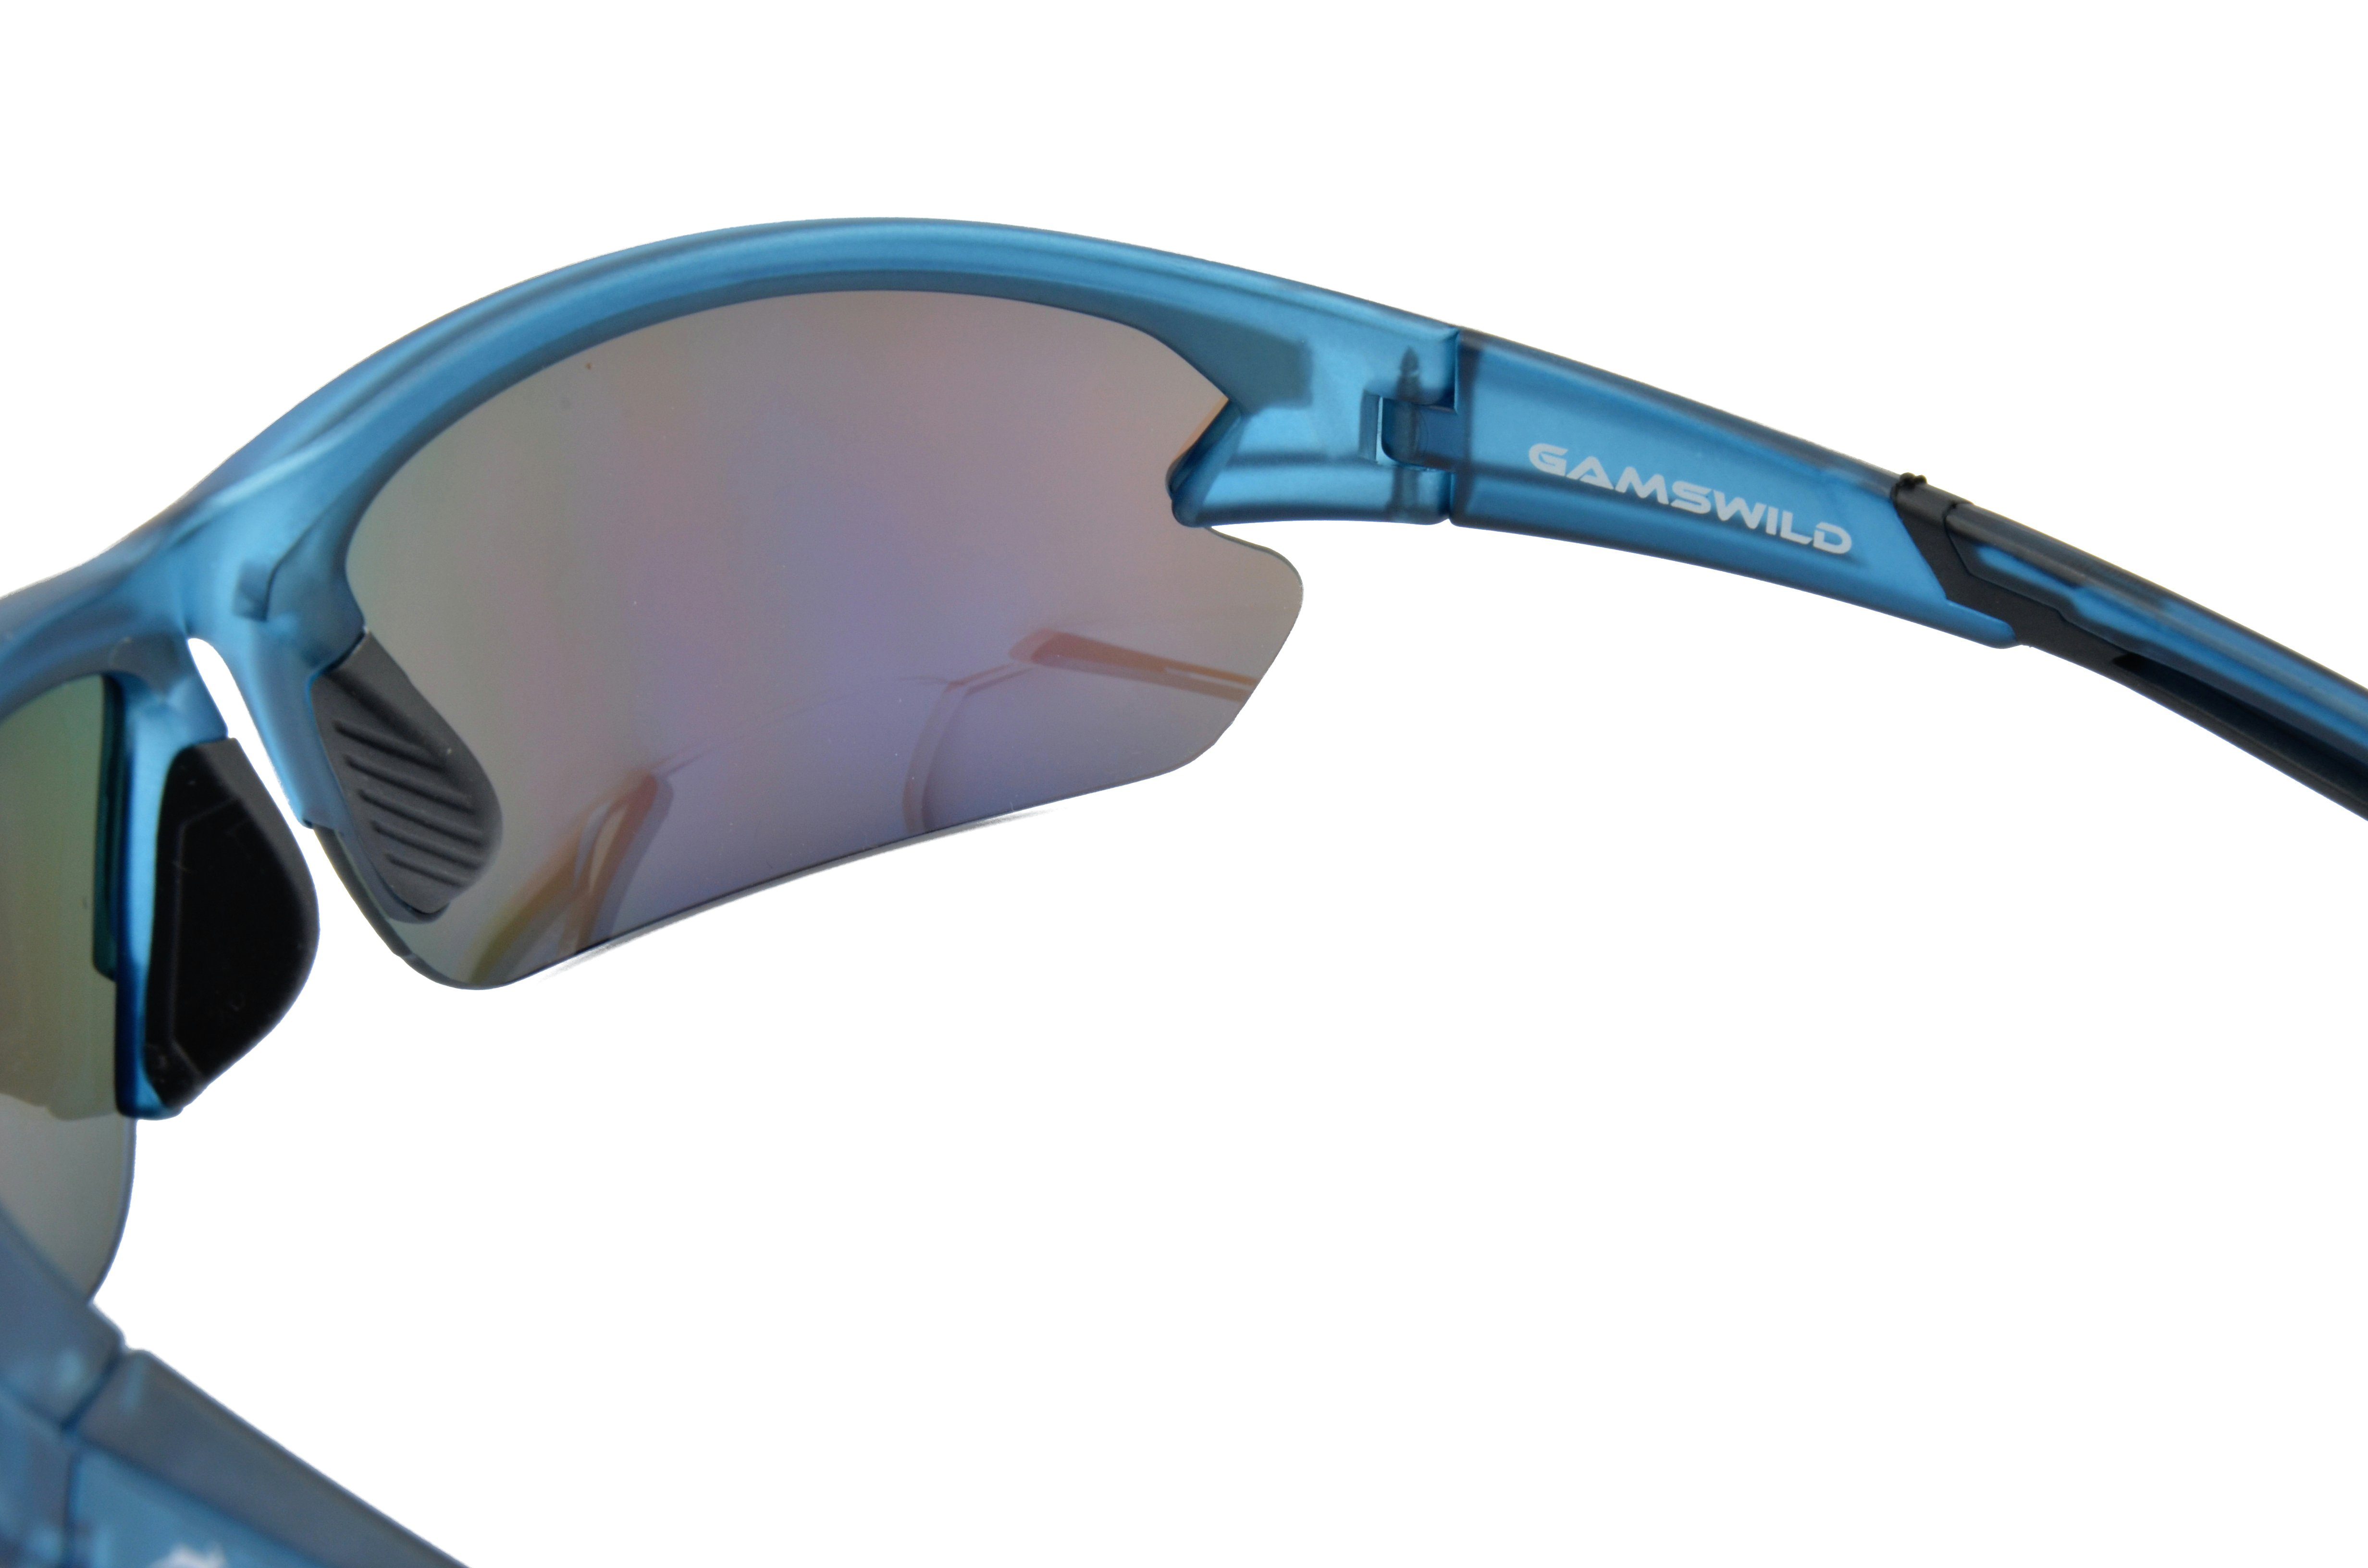 Herren Sonnenbrille Halbrahmenbrille Fahrradbrille WS6028 blau, Unisex, Gamswild Sportbrille rot-orange, Skibrille Damen violett,